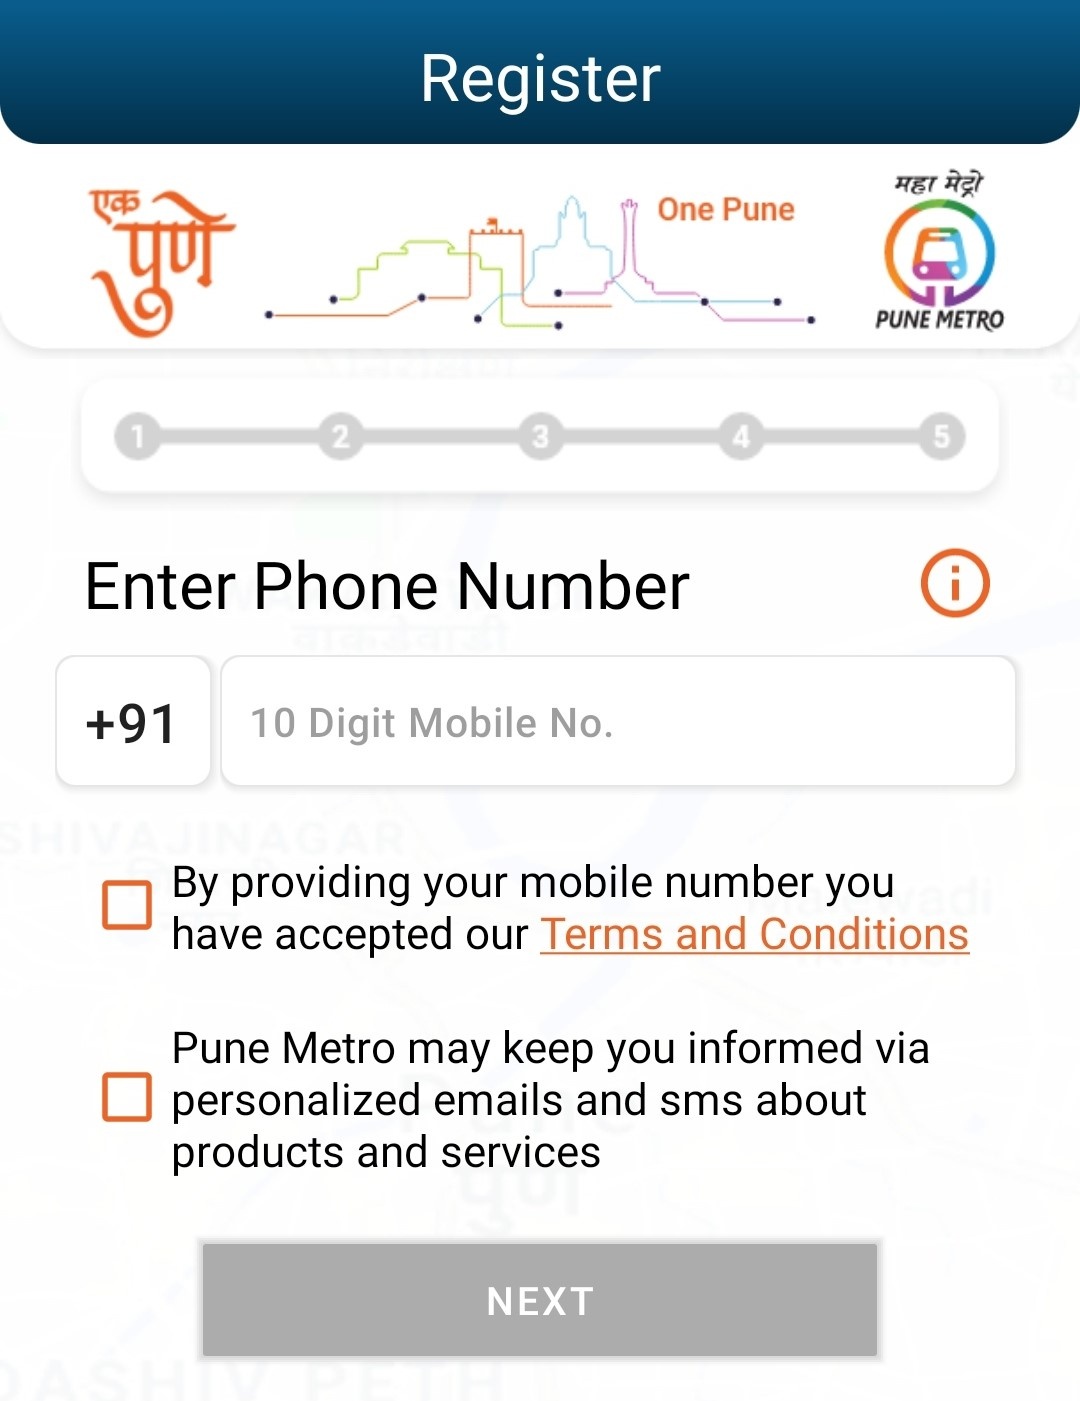 Pune Metro ticket booking online